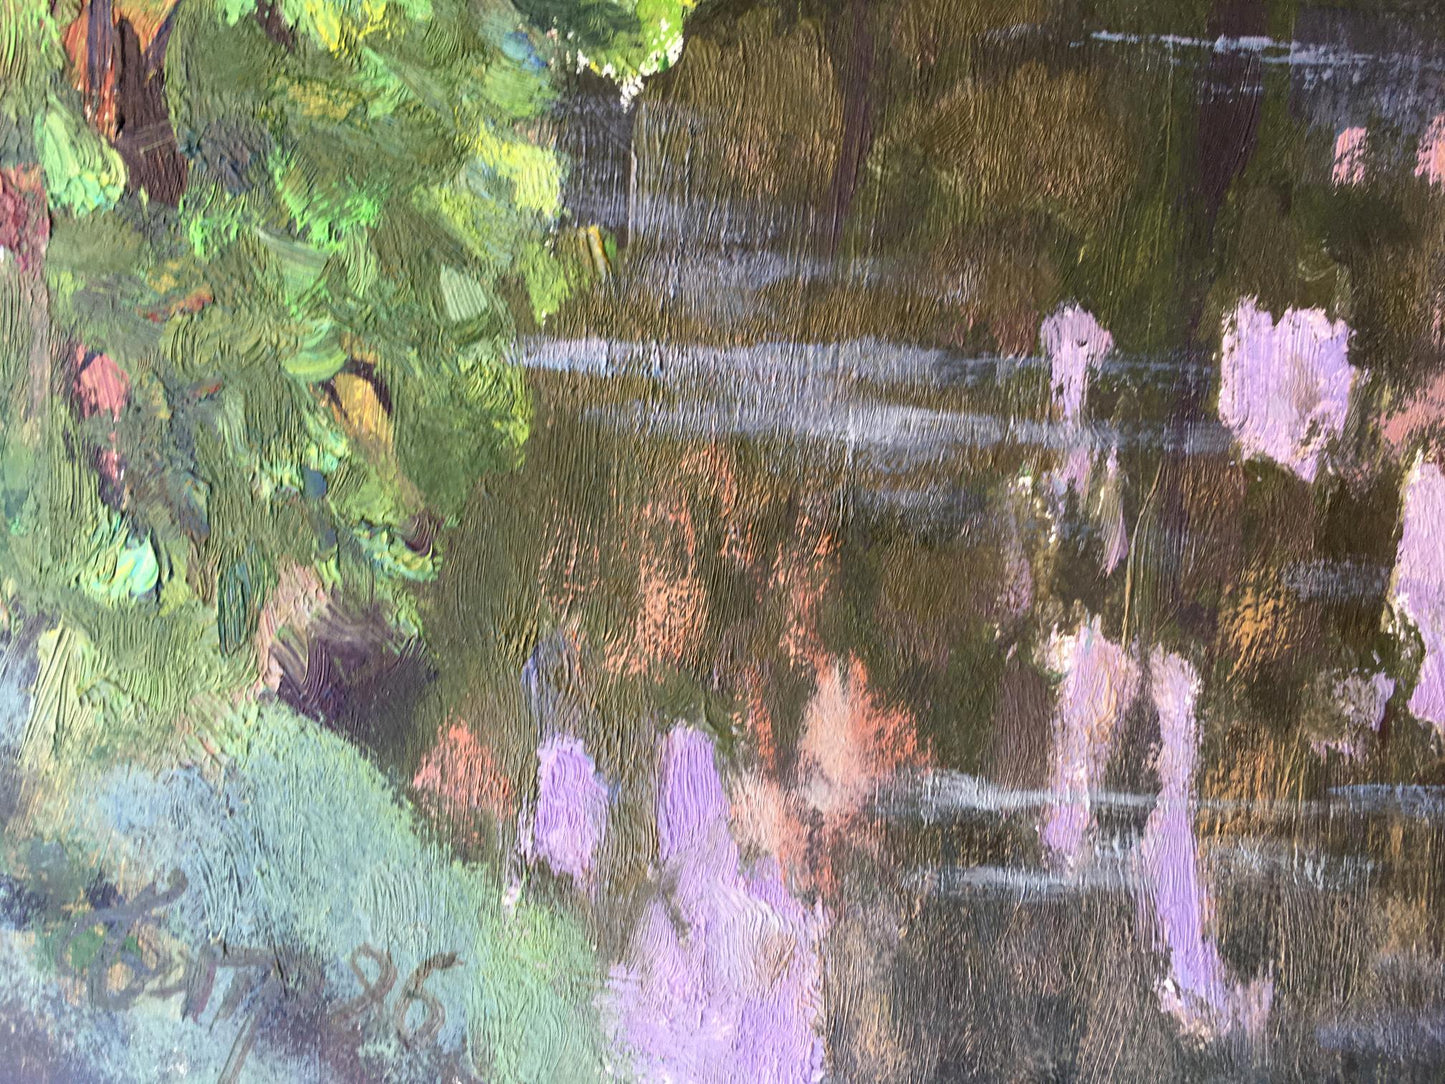 Oil painting Spring lake in the forest Vladimir Batrakov